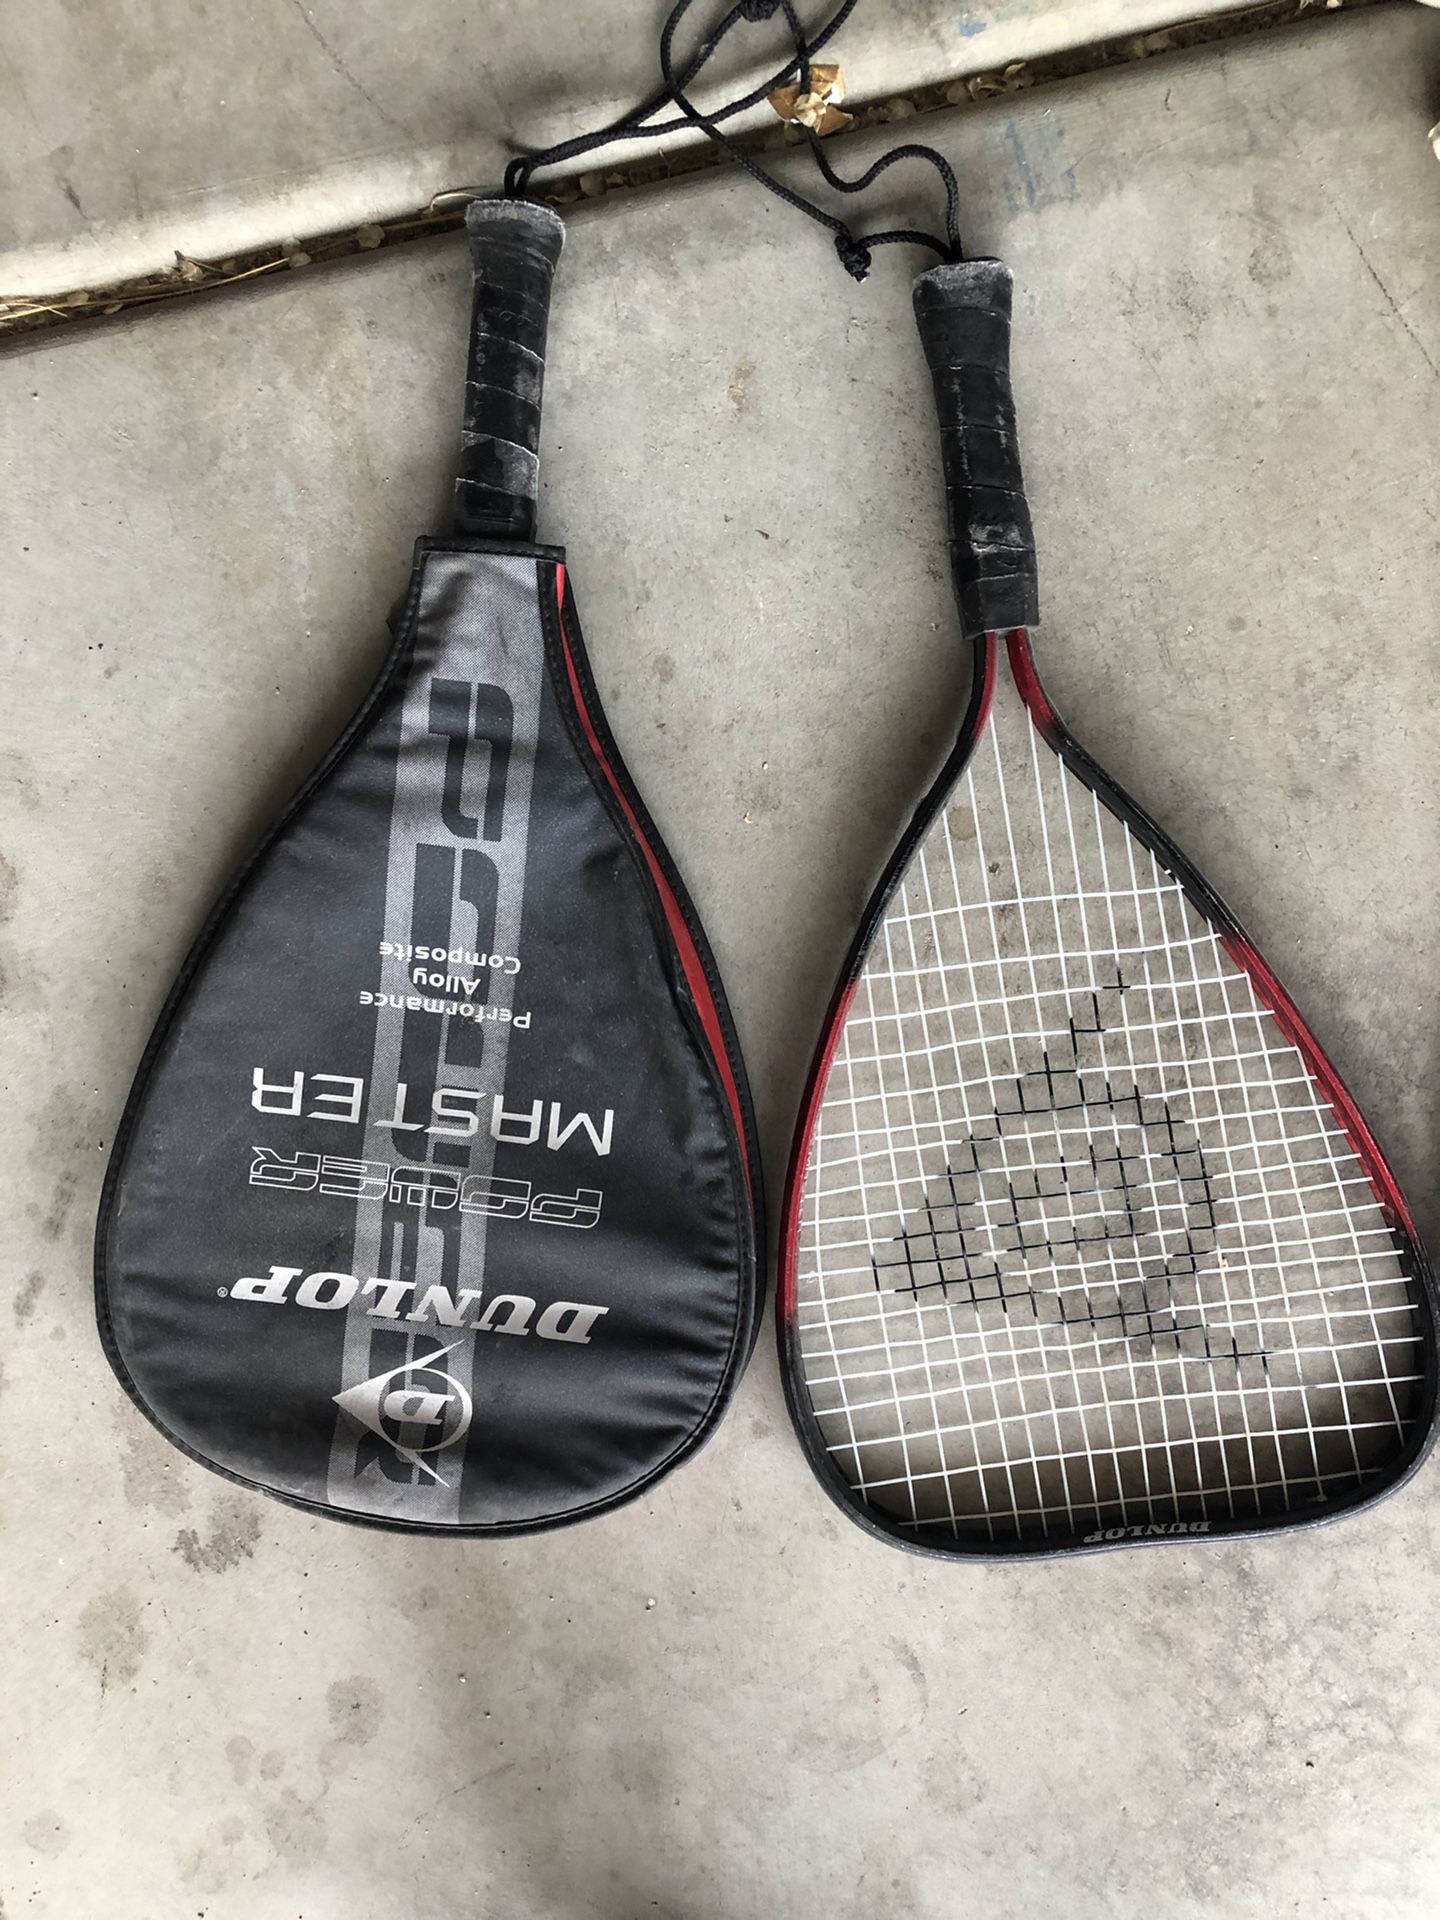 Matching pair of tennis racket